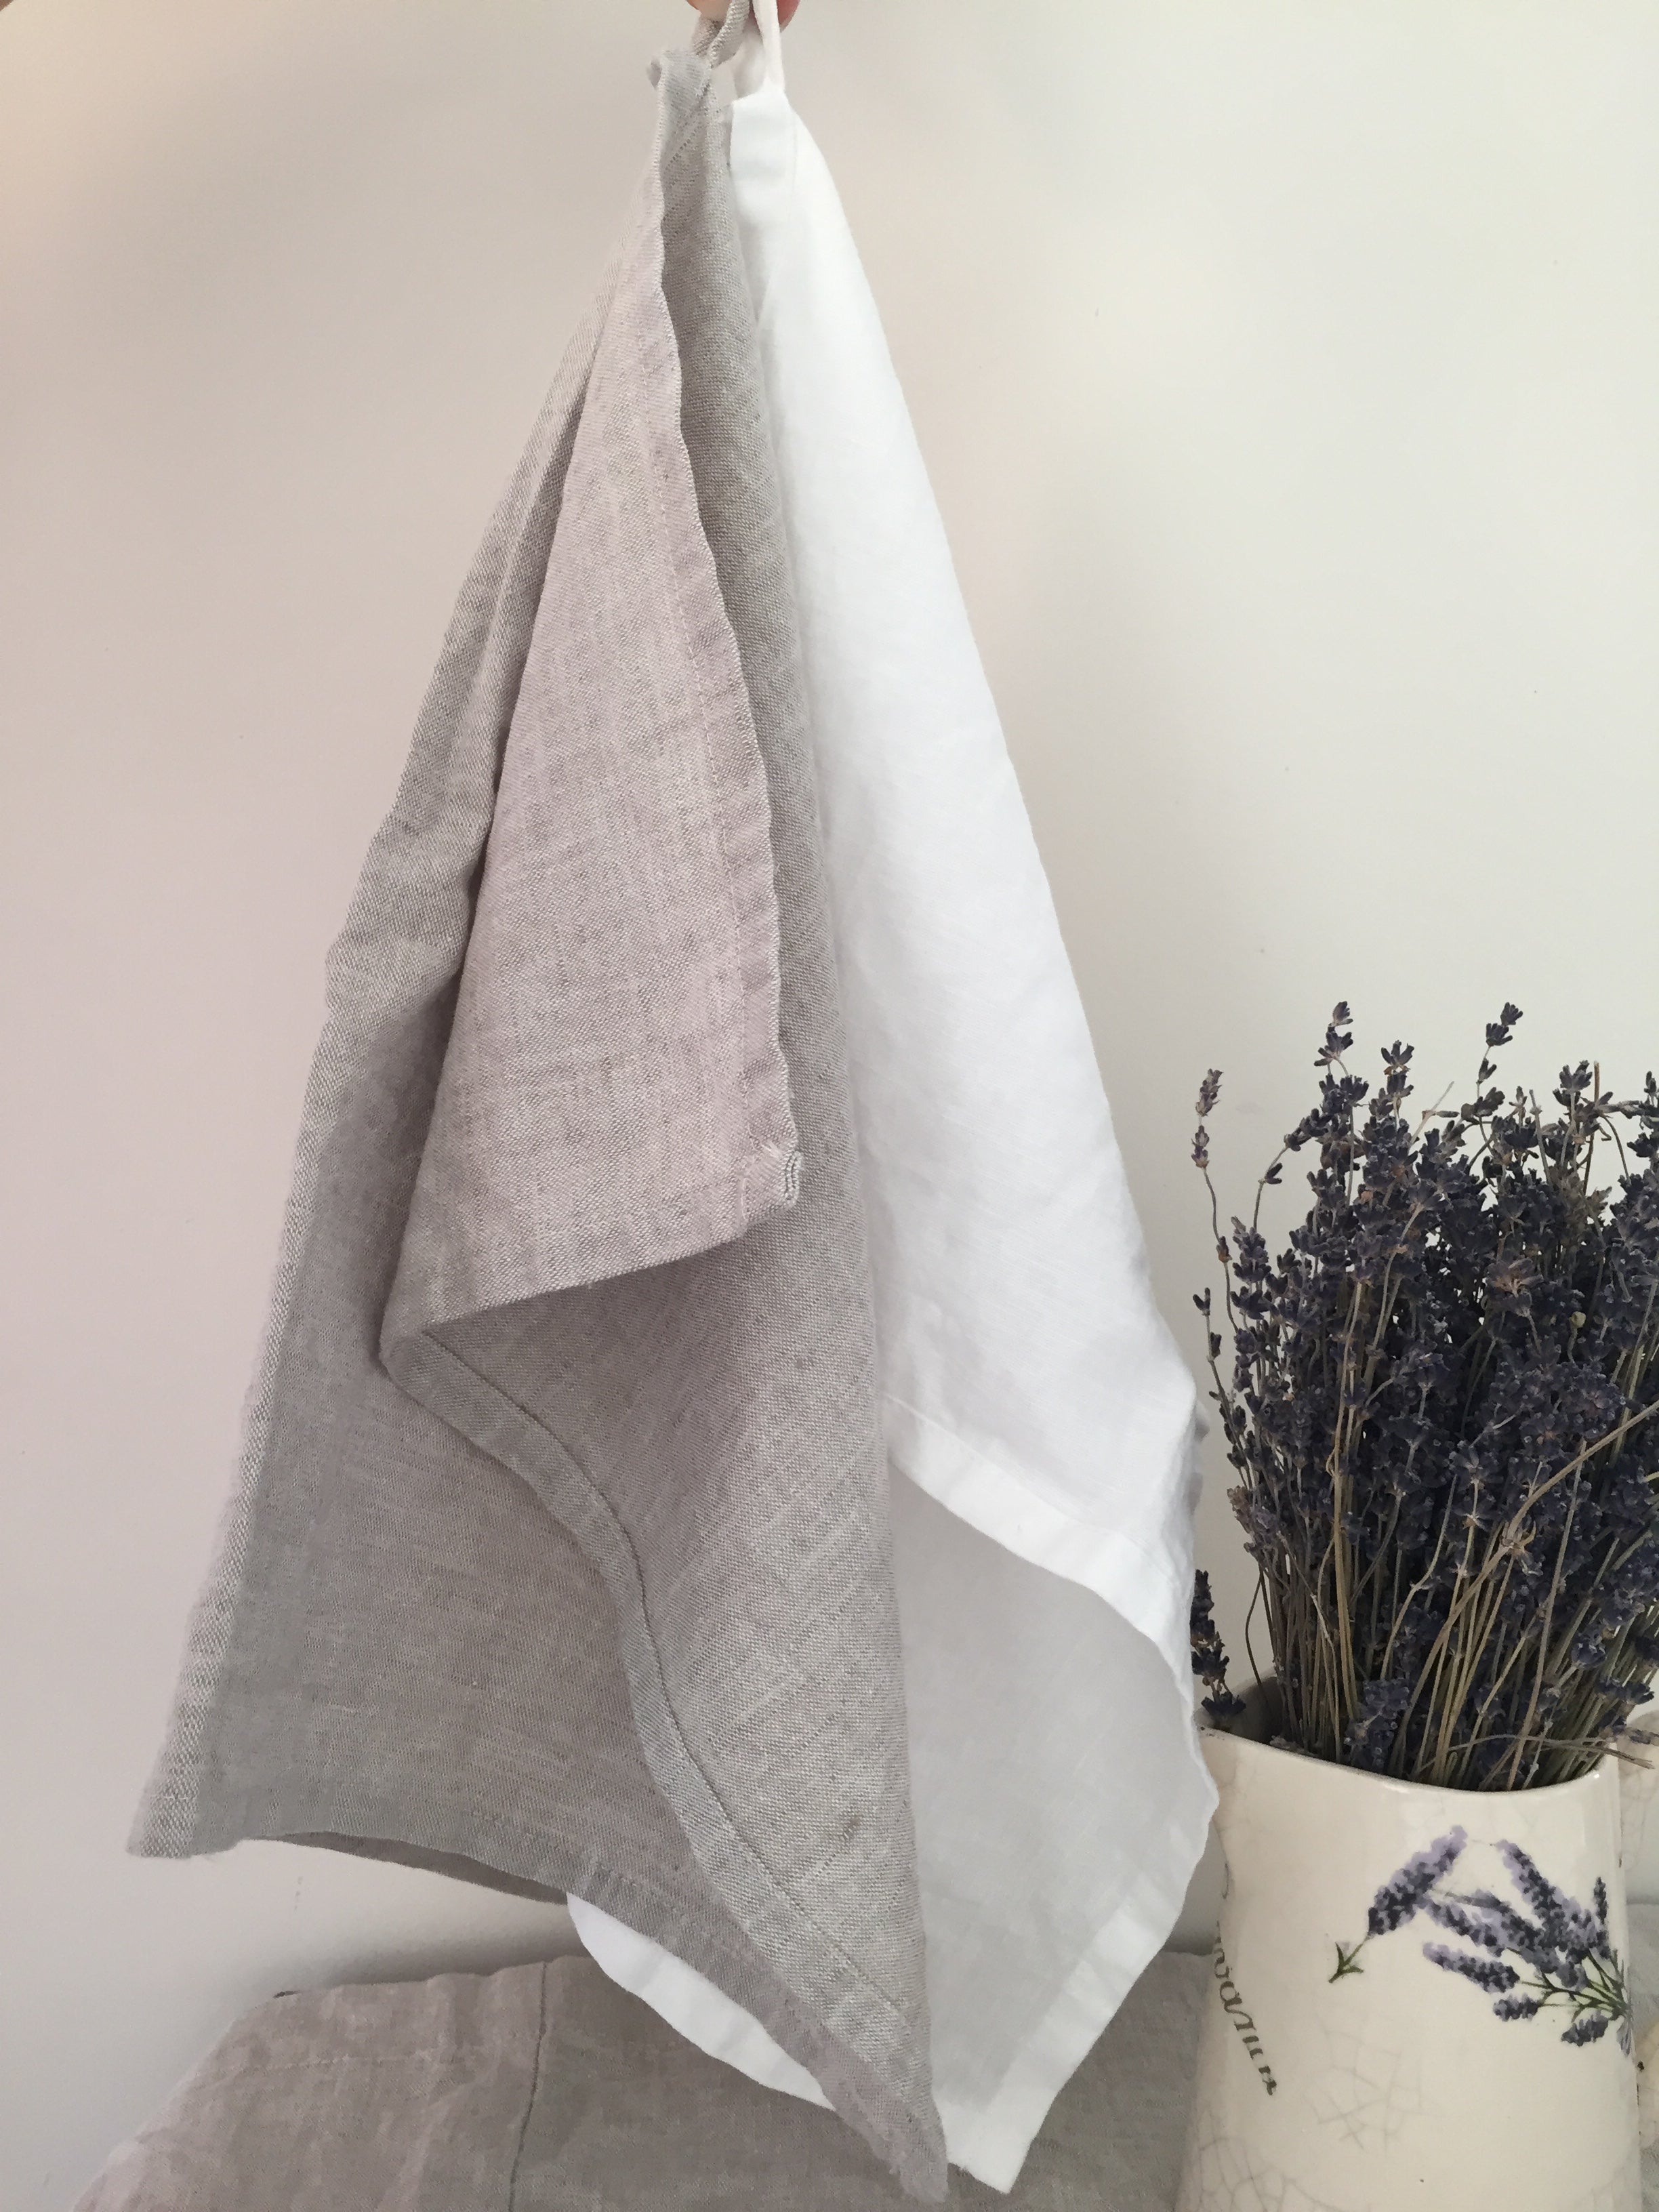 Pure Linen Bath and Hand Towel Set - Flax Spa Towel Set - Grey Sauna L